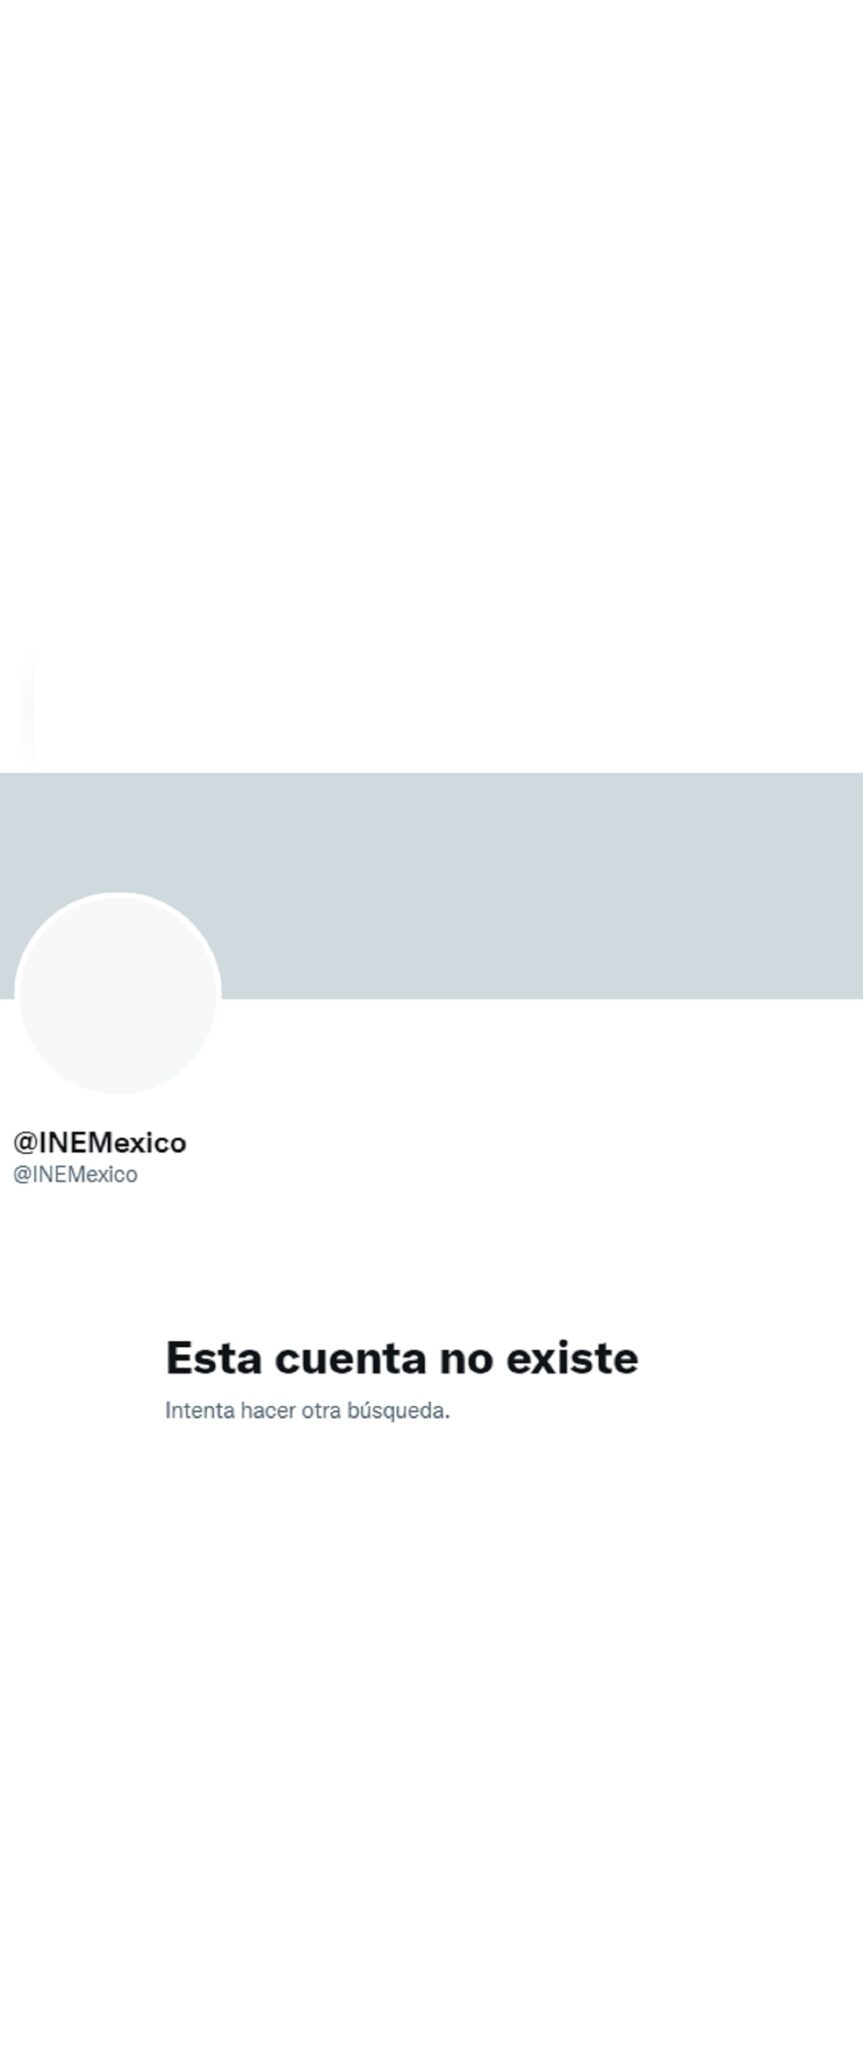 Cuenta del INE el domingo 5 de junio de 2022 (INEMexico)